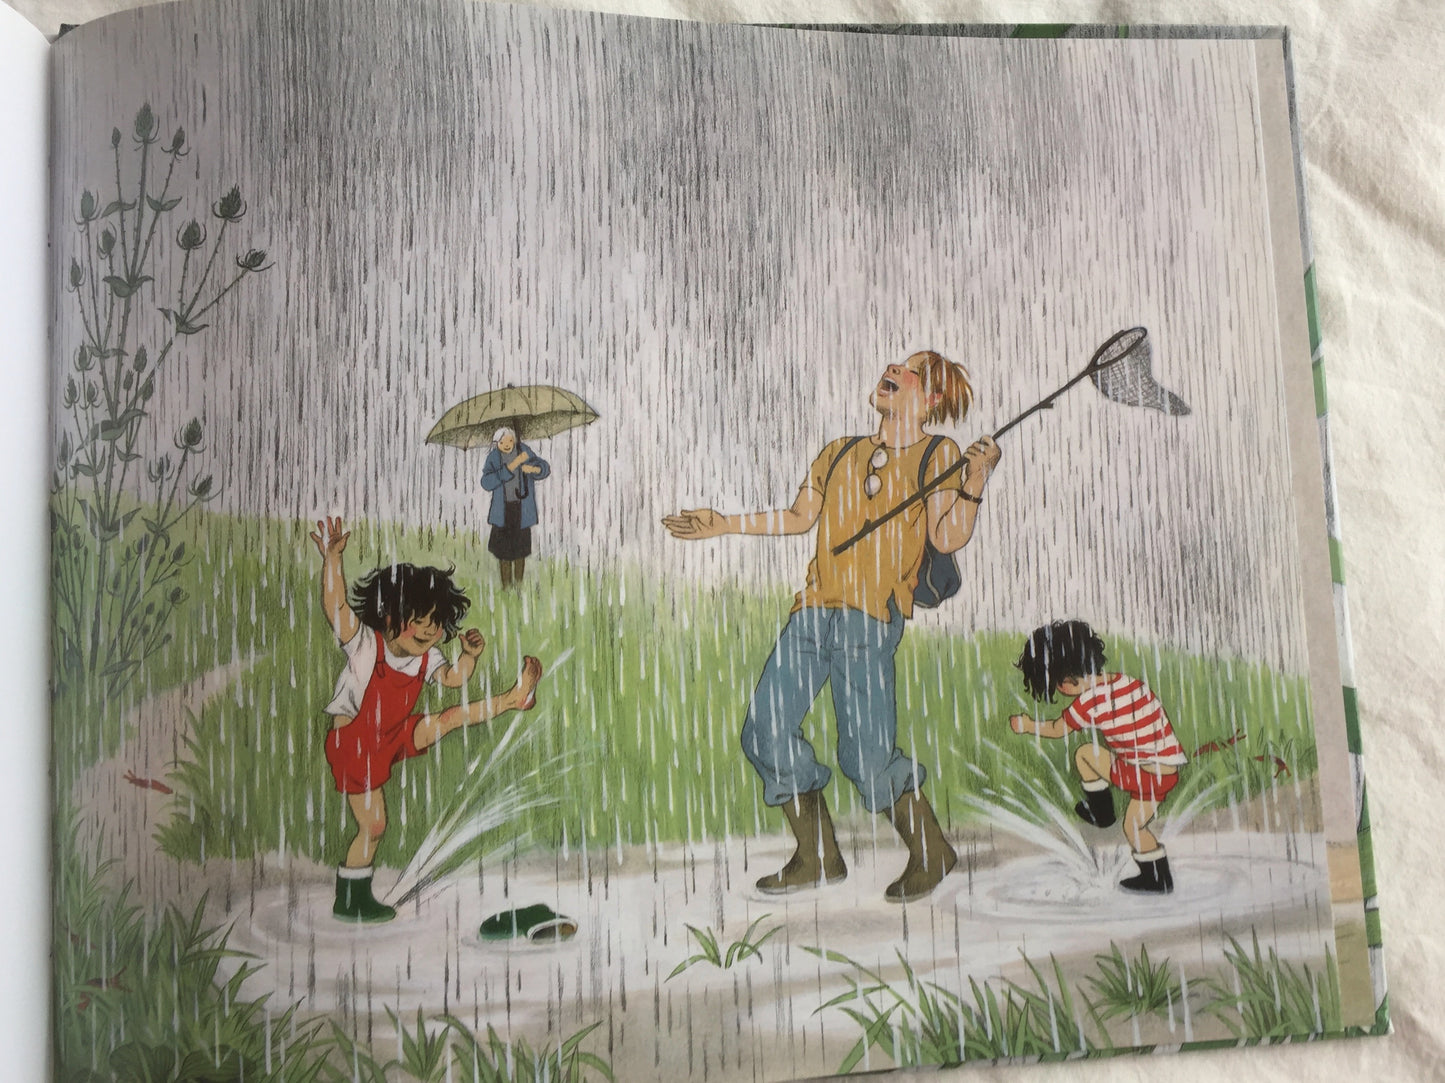 Children's Picture Book - WHERE DO THEY GO WHEN IT RAINS?